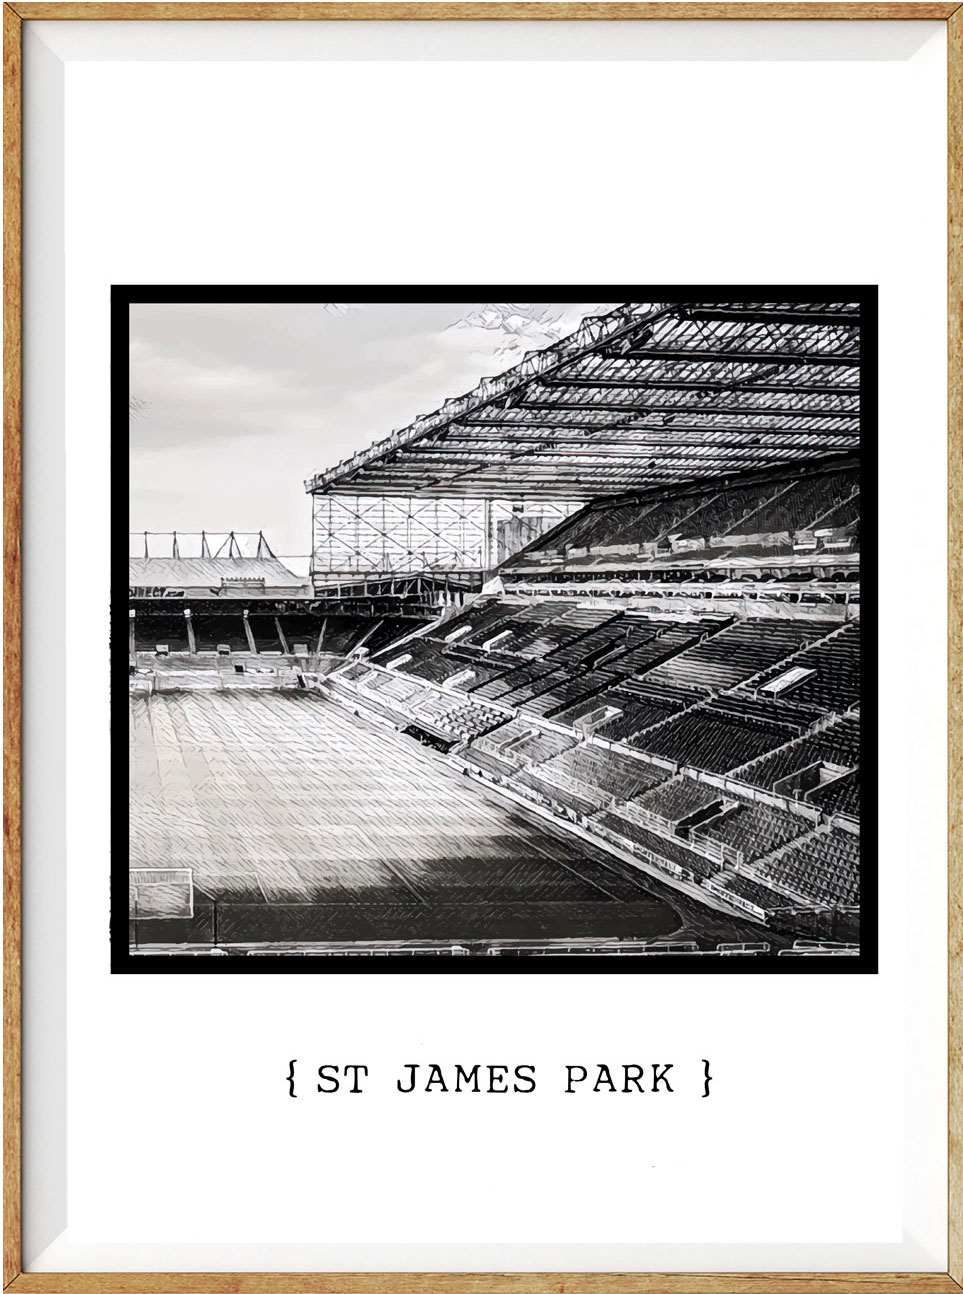 Newcastle St James Park